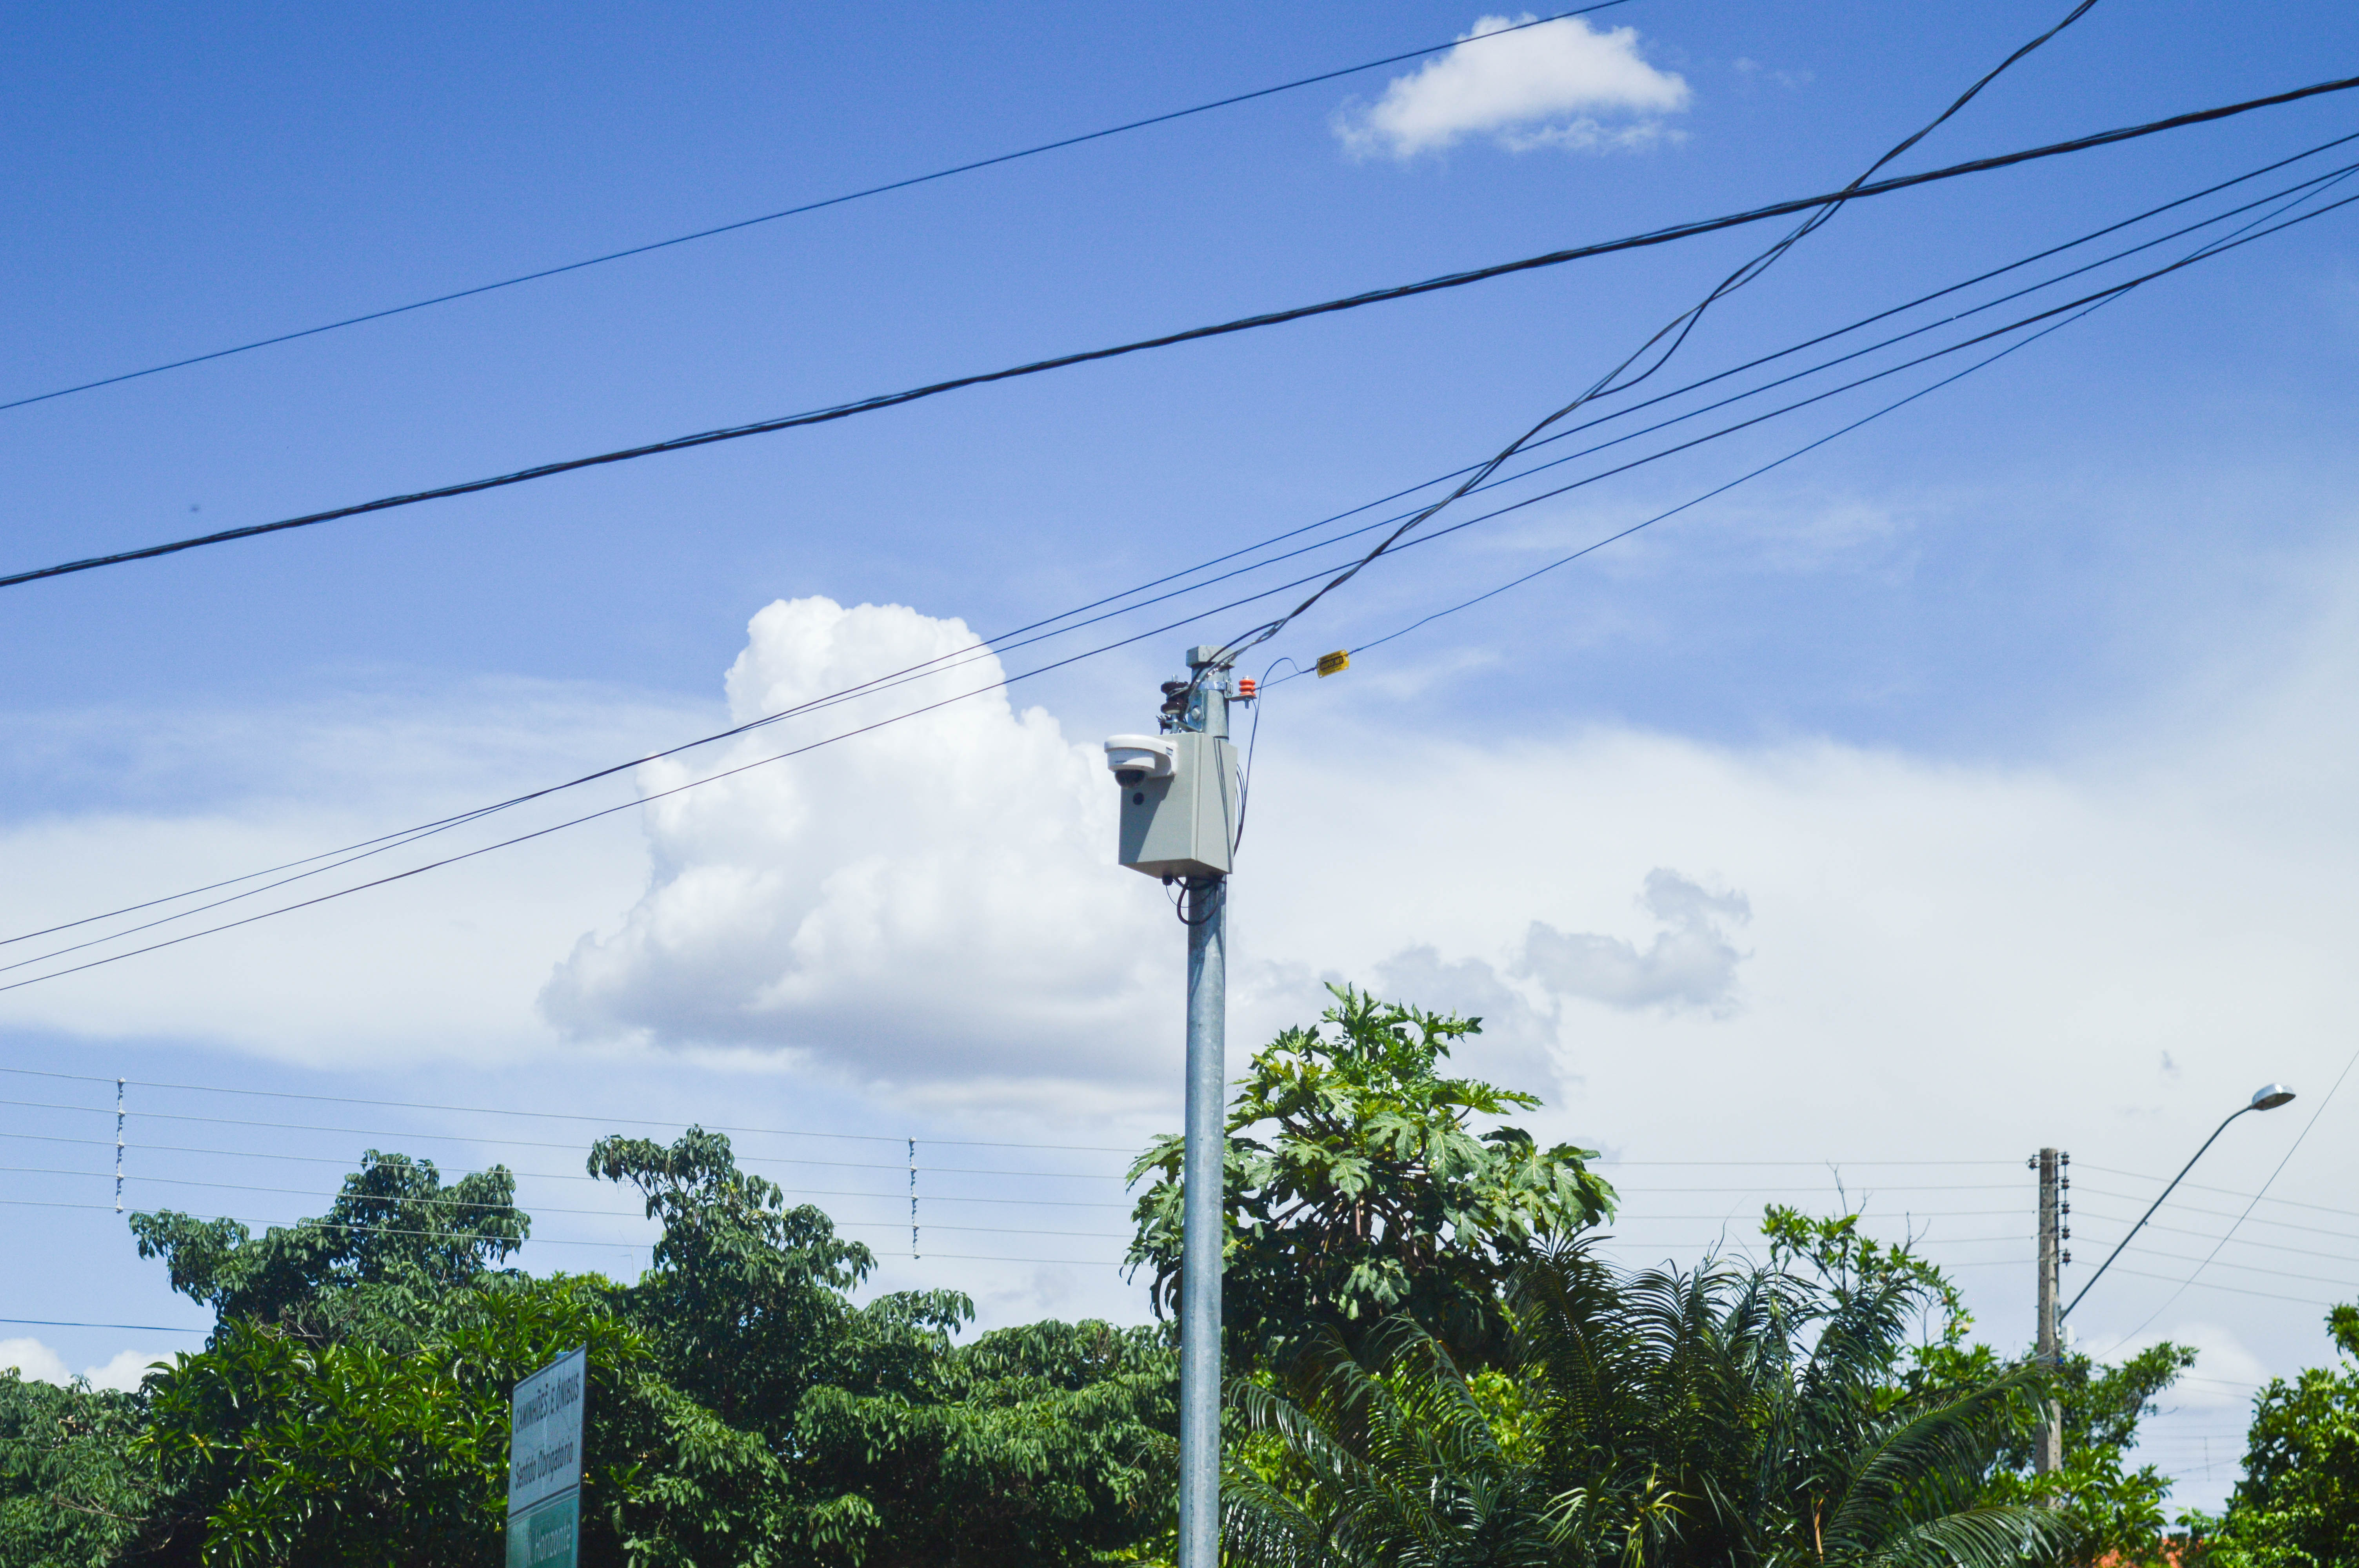 Câmeras estão localizadas em pontos estratégicos da cidade. Foto: Henrique Alonso Camilo / Prefeitura Municipal de Urupês.